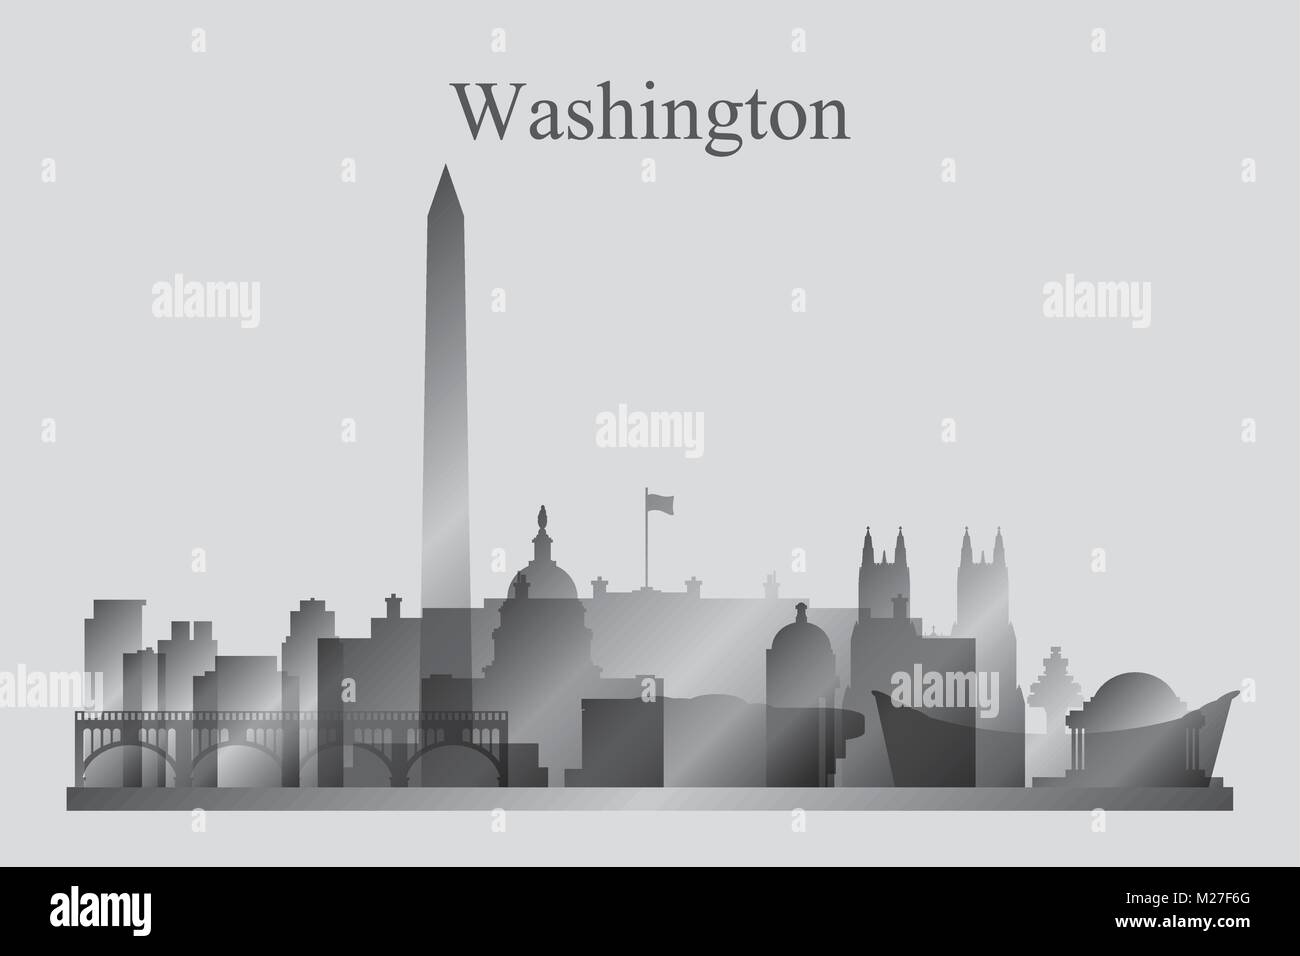 Washington city skyline silhouette in scala di grigi, illustrazione vettoriale Illustrazione Vettoriale